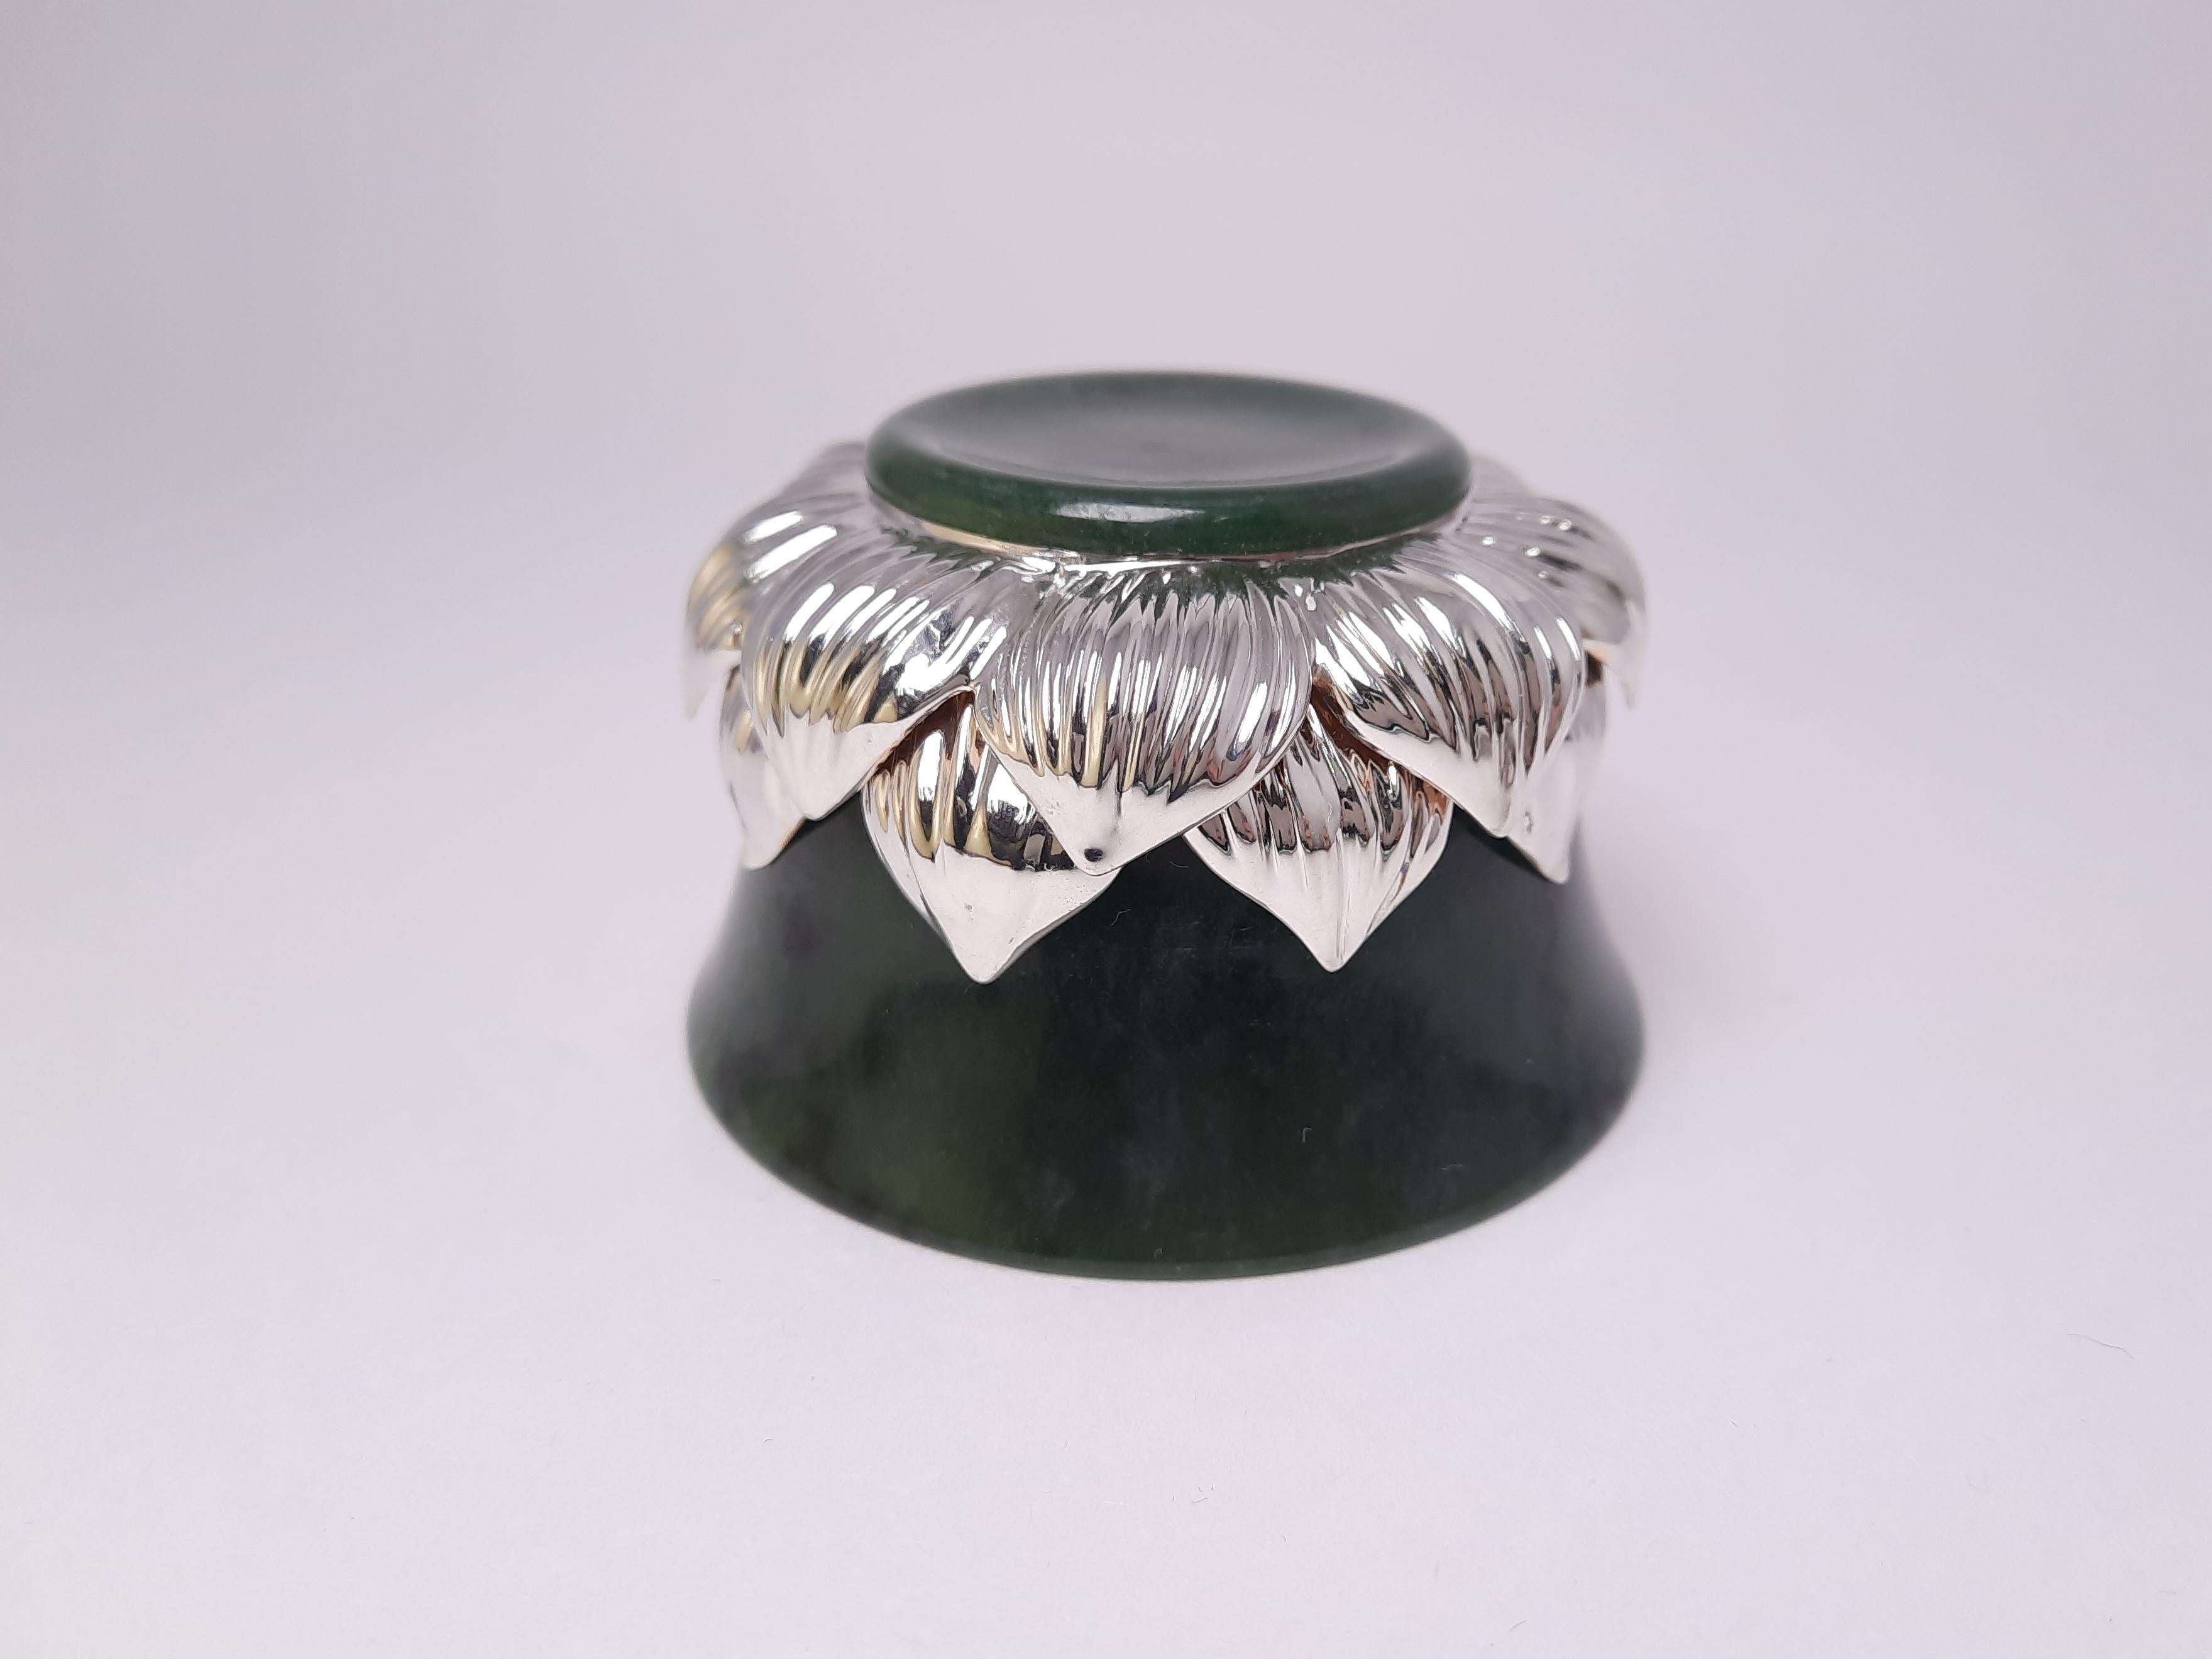 Das exquisite Teeset LOTUS von MOISEIKIN besteht aus echtem Silber und edlem Ural-Nephrit, einem spirituellen und energetischen Stein. Echter Nephrit ist reich an Mineralien und Spurenelementen, hat eine pflegende Wirkung auf die Haut und baut